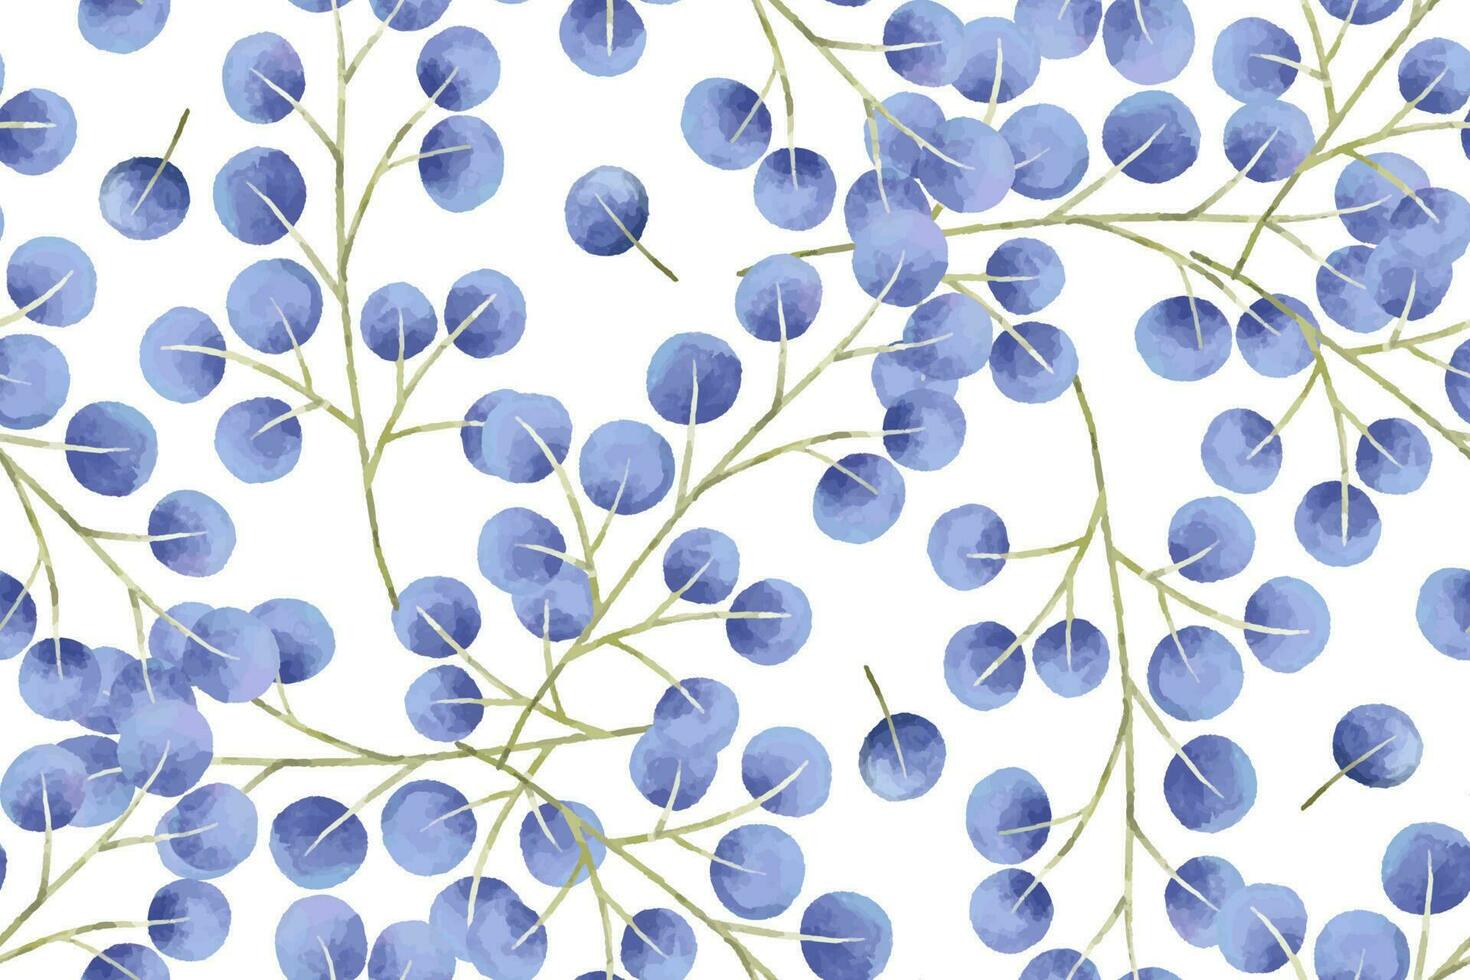 botanisch nahtlos Muster mit Geäst, Blätter, Kräuter, Illustration vektor